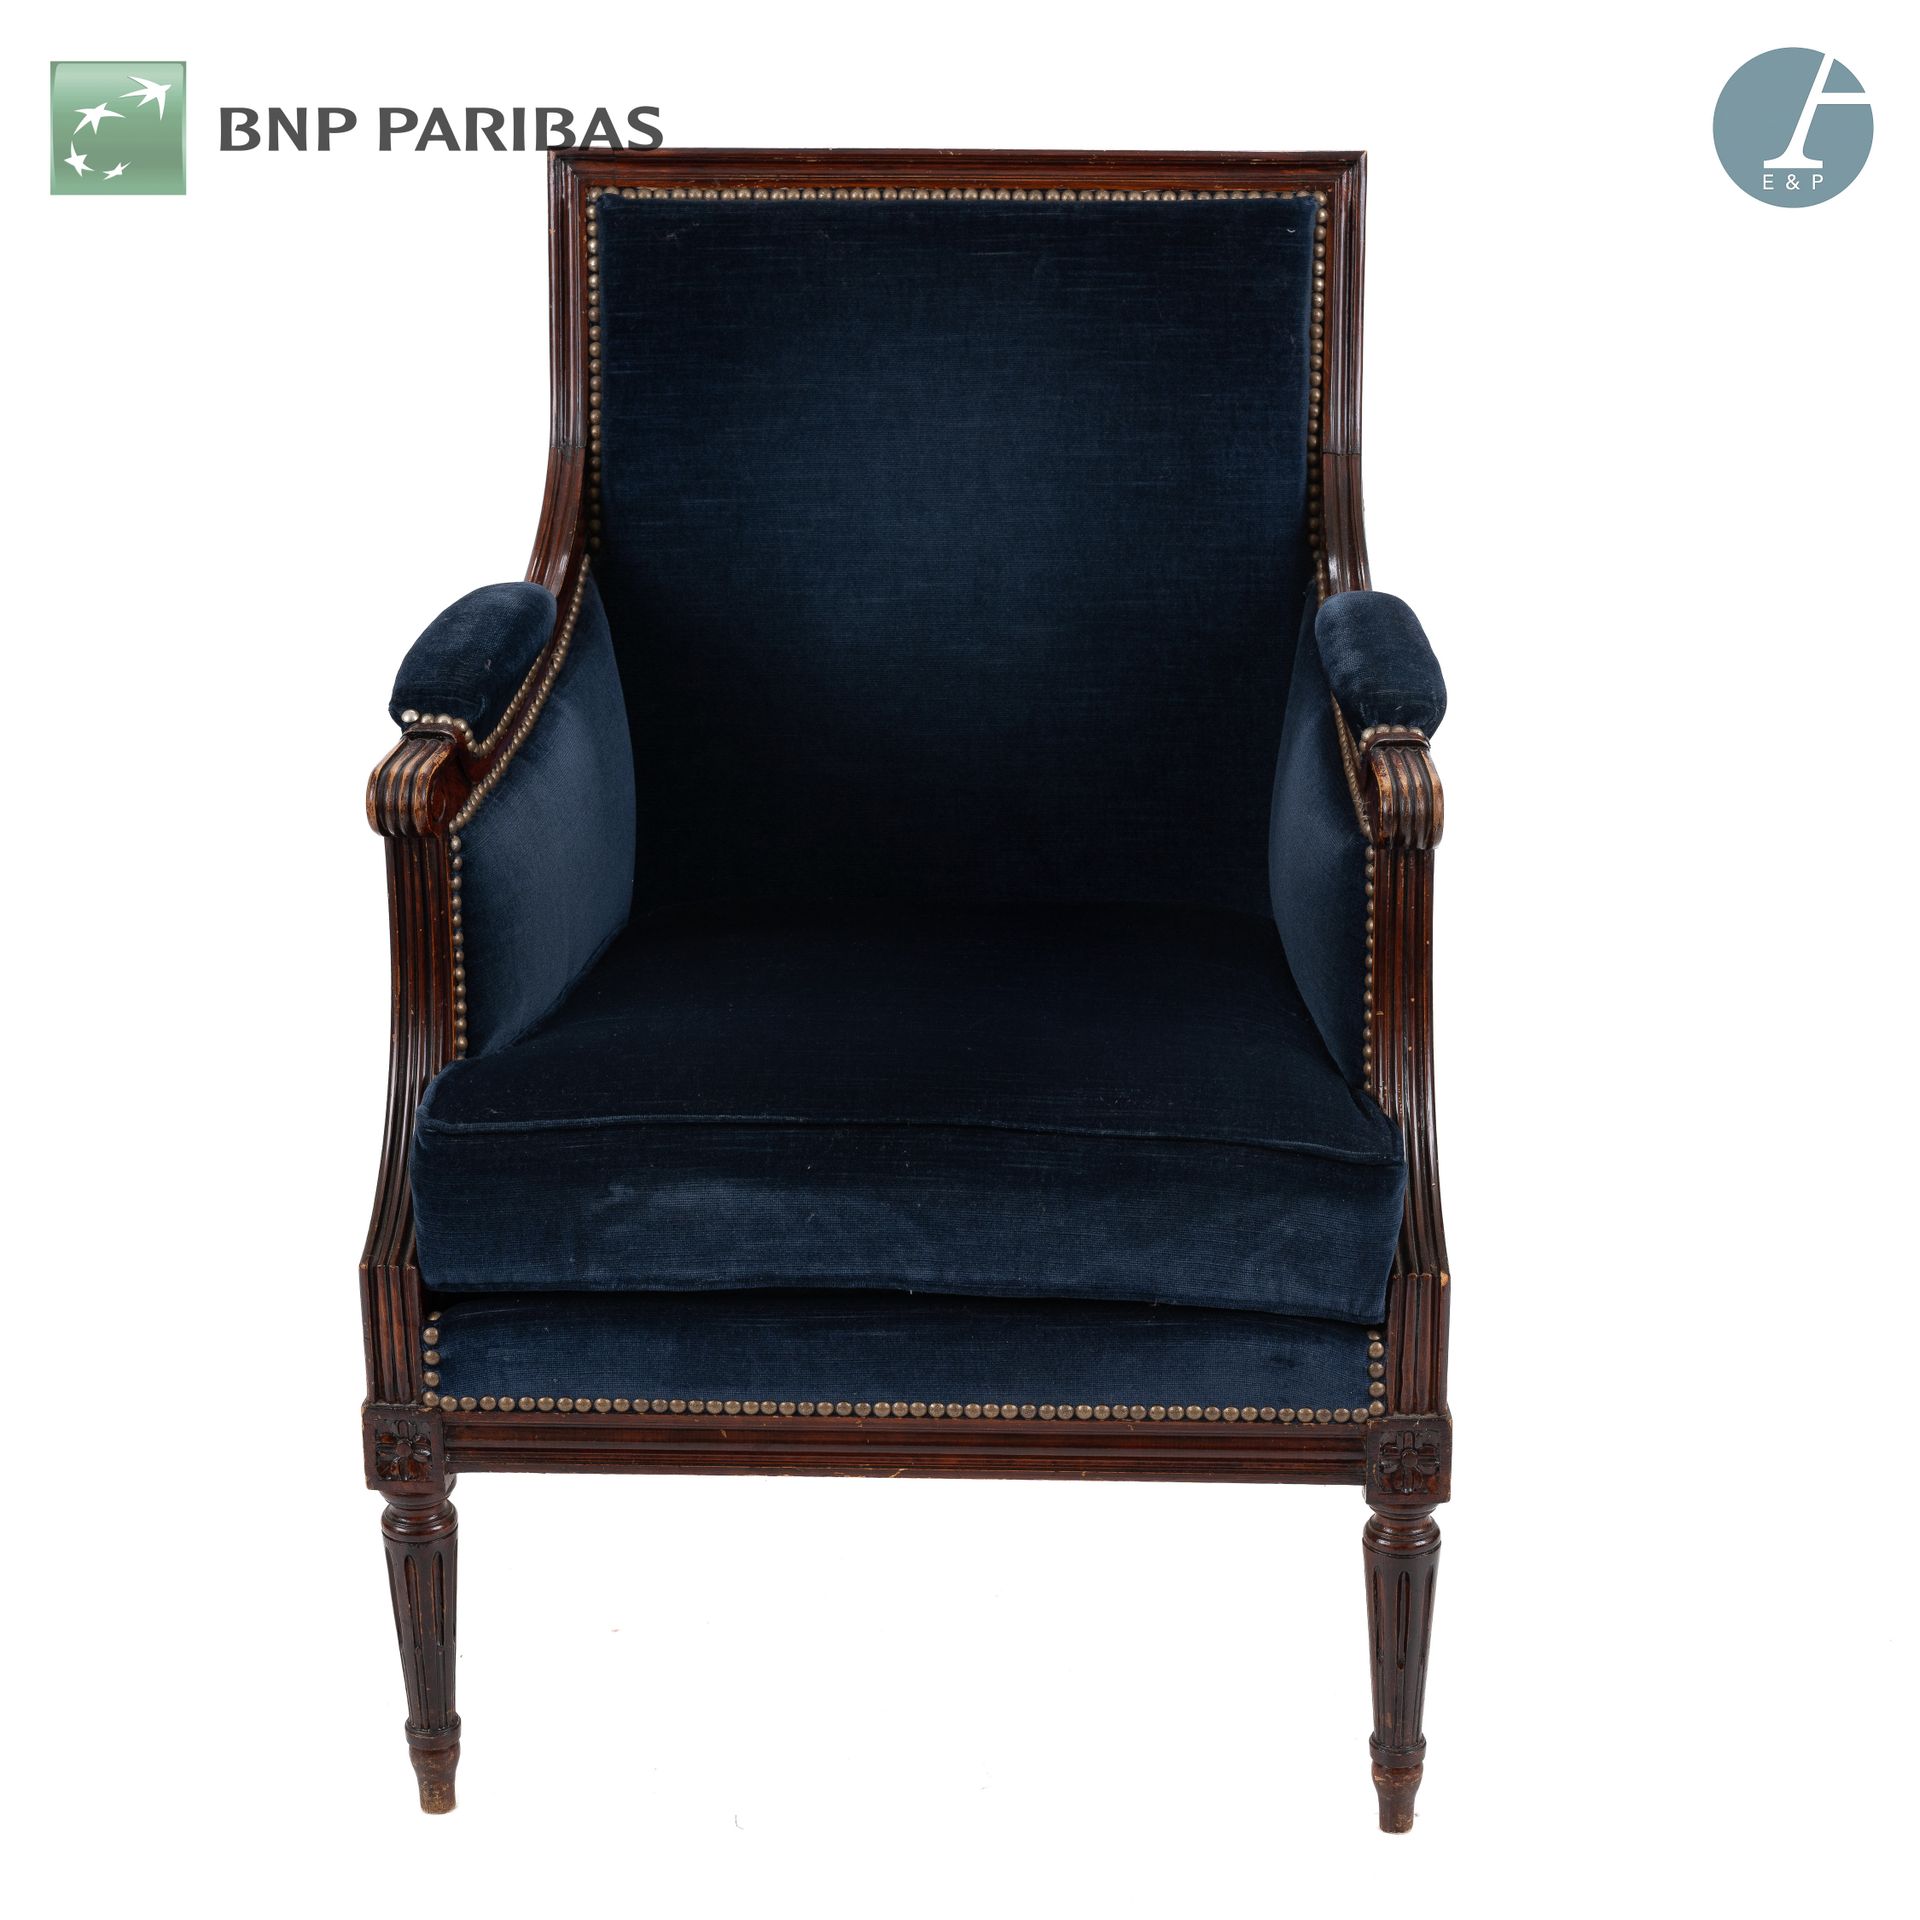 Null 天然木模制和雕刻的扶手椅。午夜蓝天鹅绒软垫。 
路易十六风格
使用条件

高：90厘米 - 宽：71厘米 - 深：55厘米